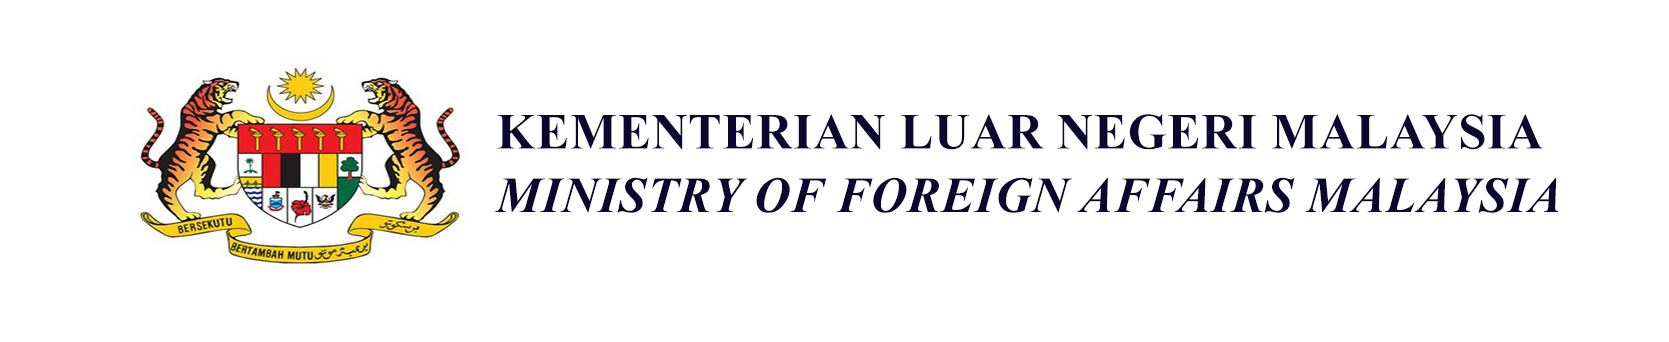 logo kementerian dalam negeri